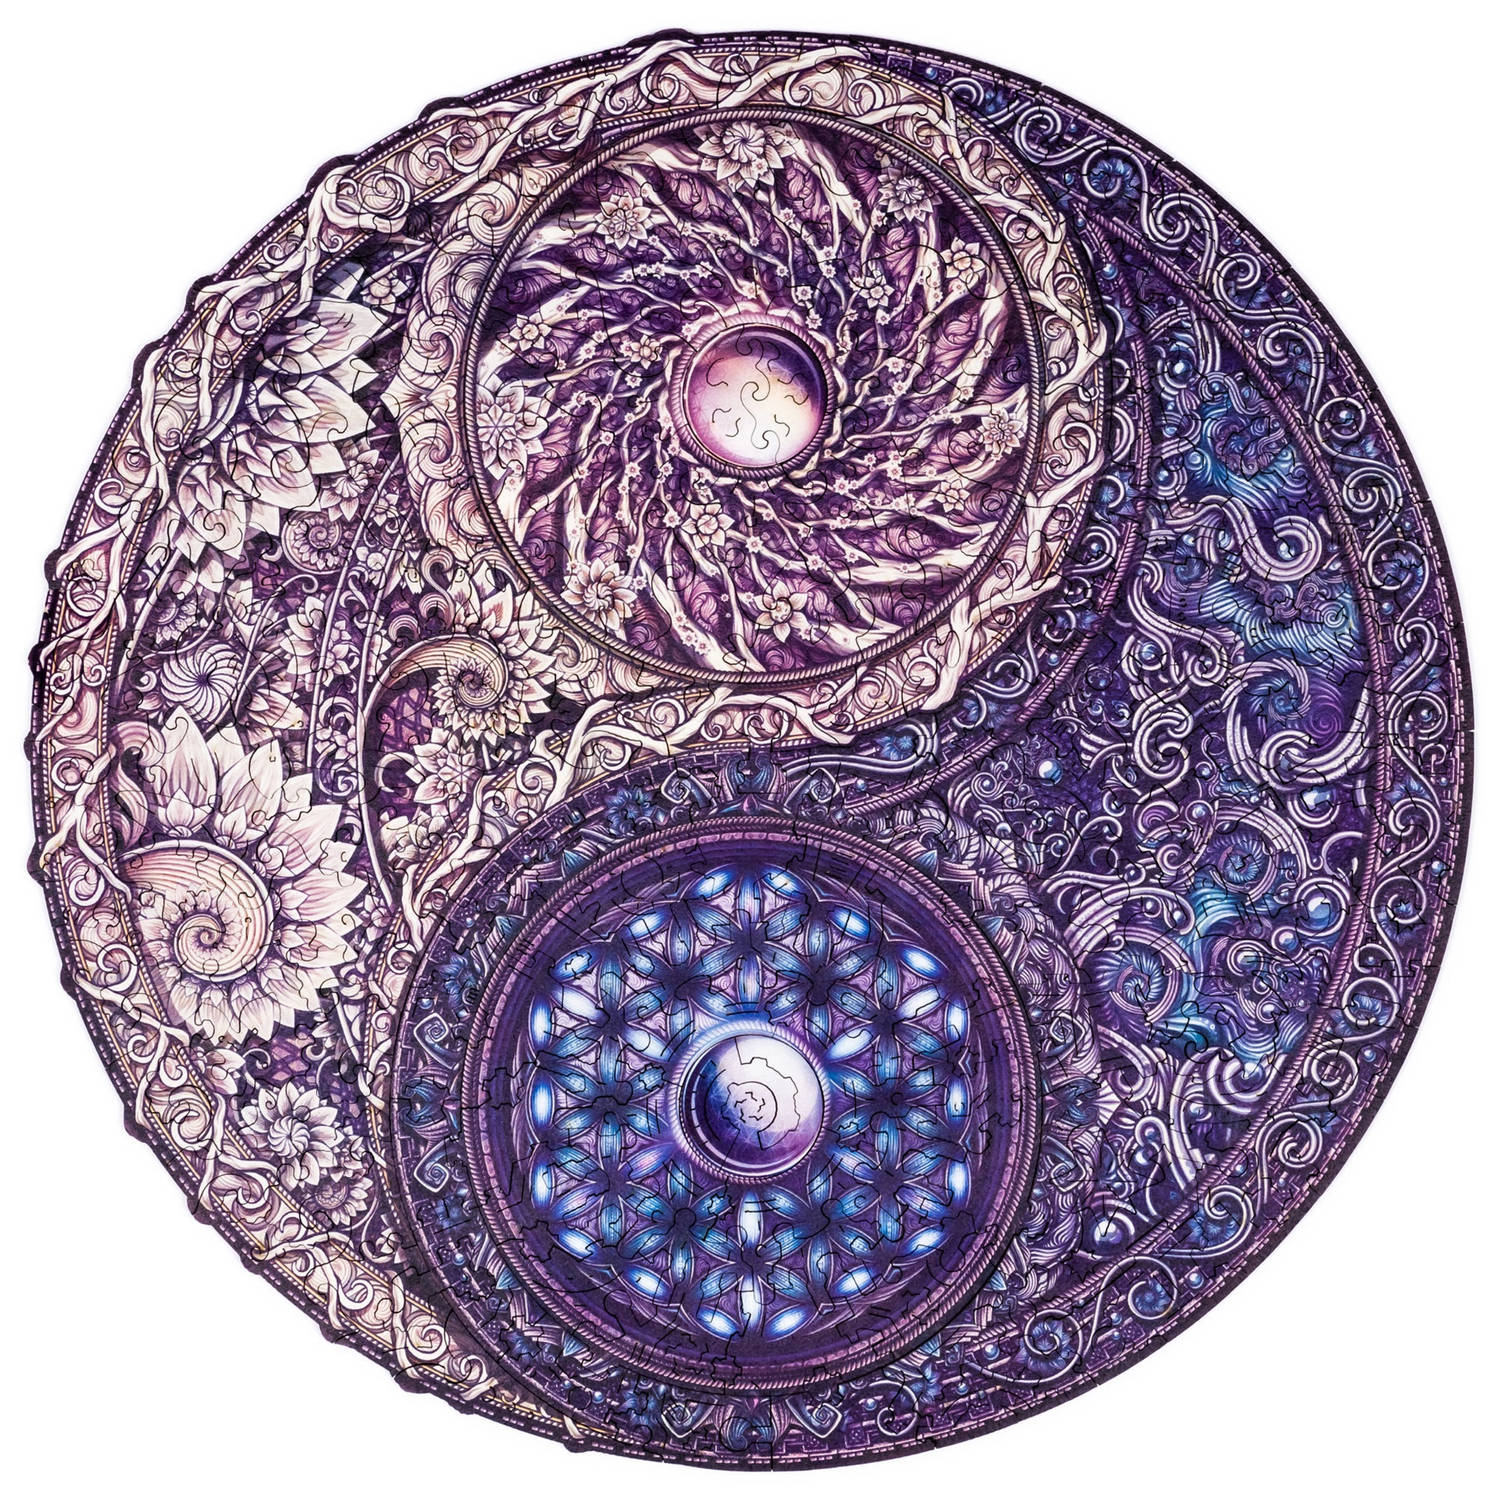 UNIDRAGON Houten Puzzel Mandala - Overkoepelende Tegenstellingen - 200 stukjes - Medium 25x25 cm